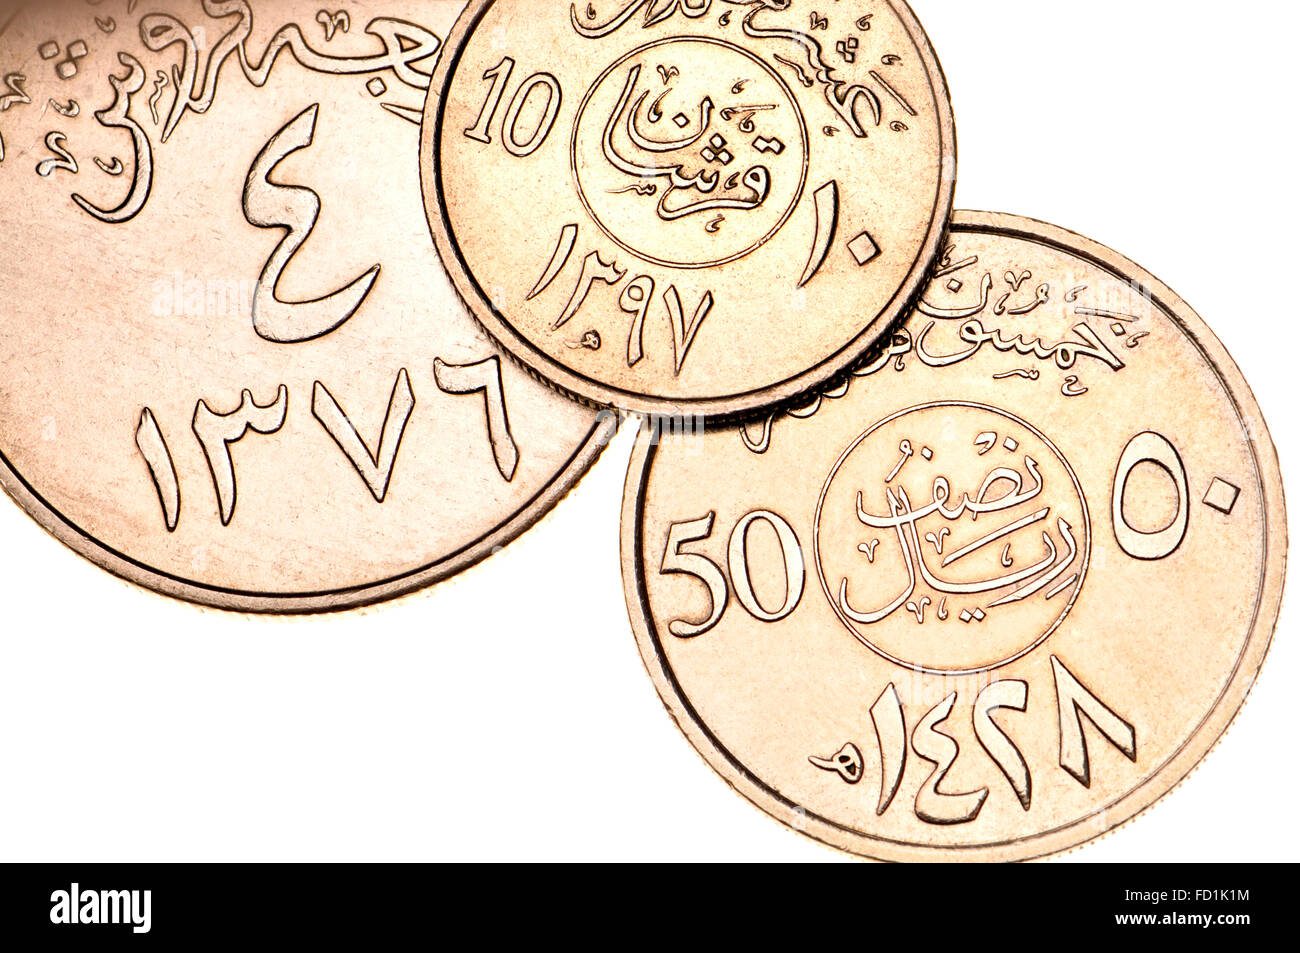 Las monedas de Arabia Saudita mostrando escritura árabe y símbolos en el alfabeto árabe oriental y las fechas en el calendario islámico Foto de stock